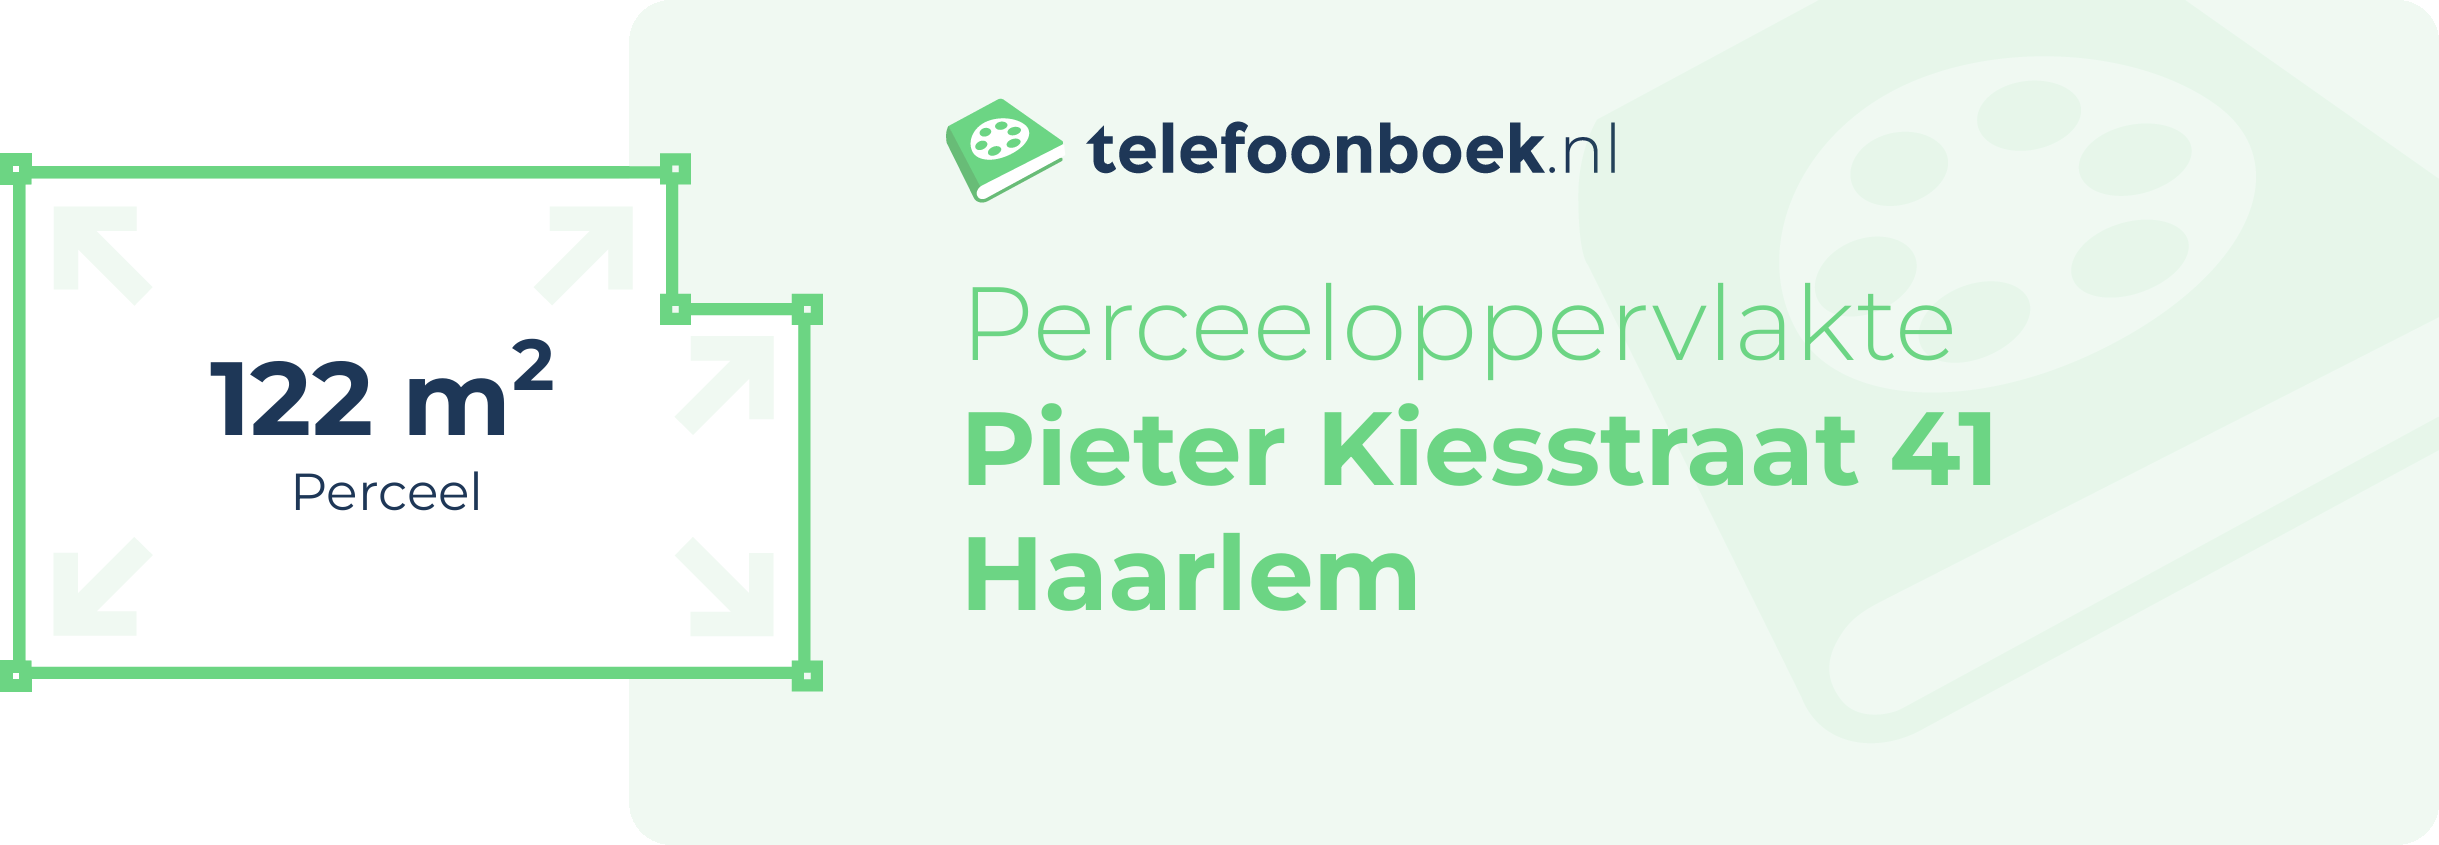 Perceeloppervlakte Pieter Kiesstraat 41 Haarlem